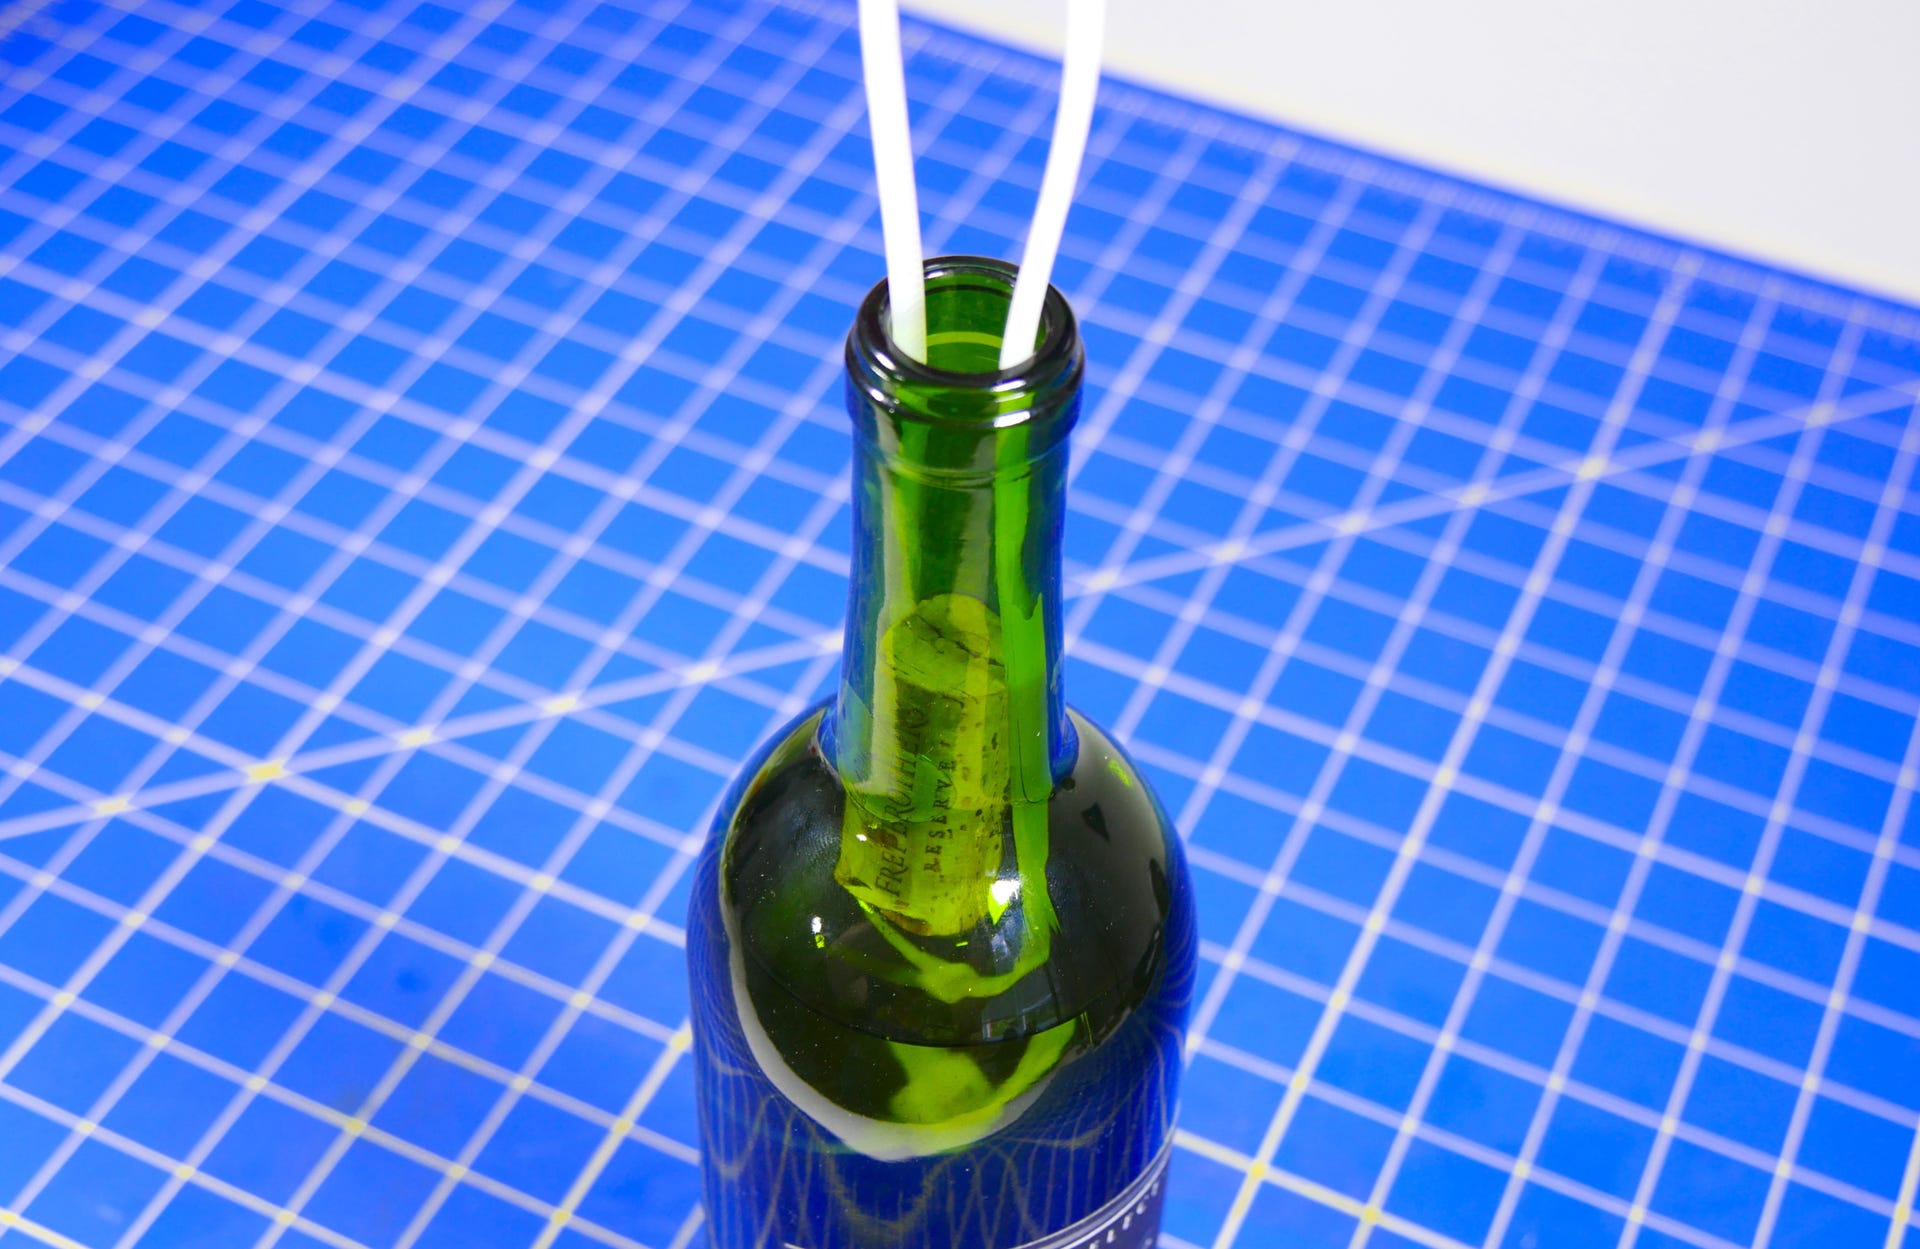 open-wine-bottle-cable-ties-3.jpg